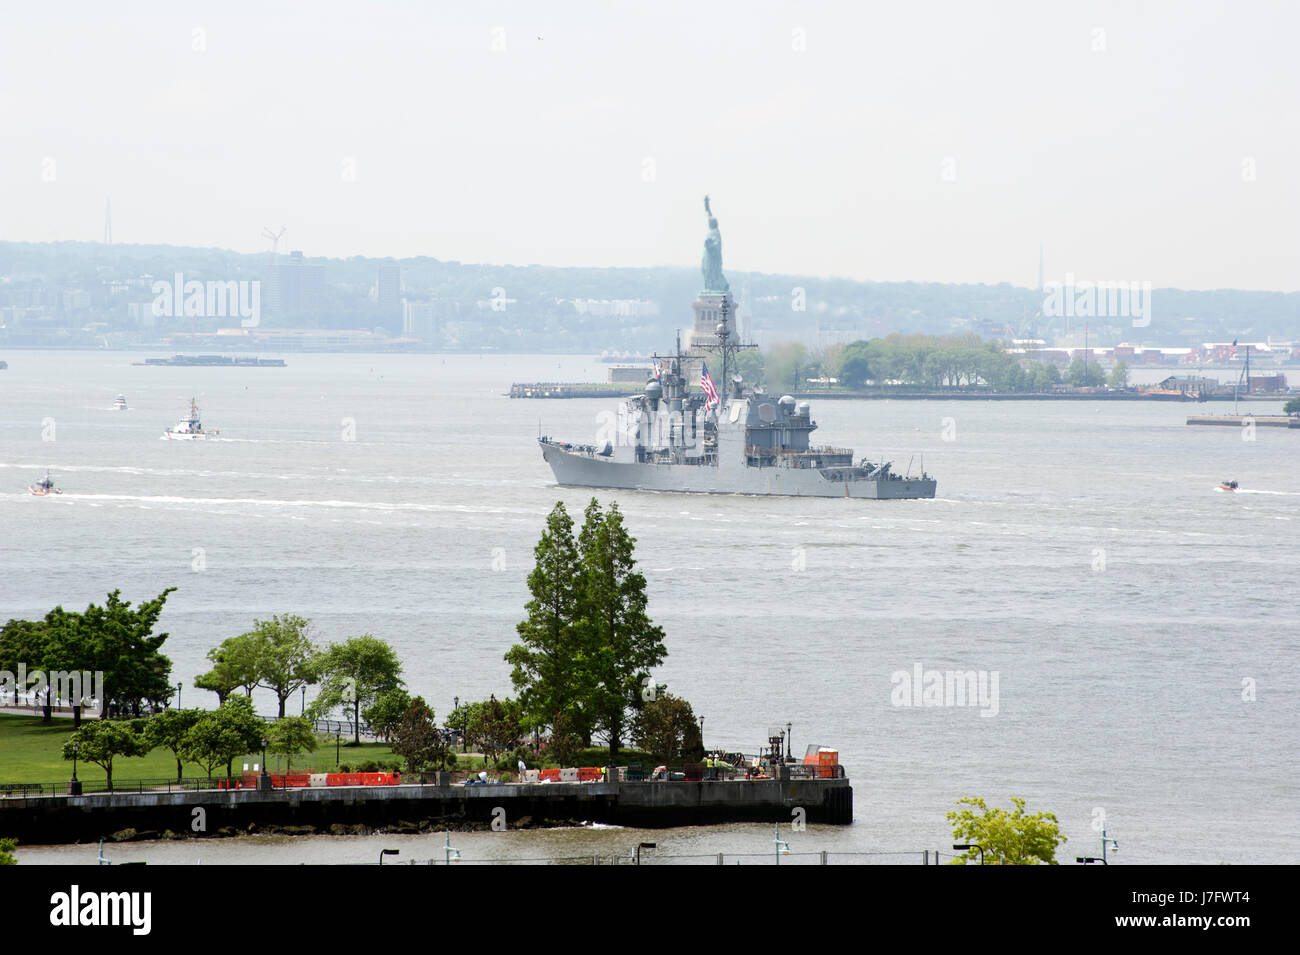 La USS San Jacinto (Cg-56), un Ticonderoga-class cruiser NEGLI STATI UNITI Marina, sulla sua strada giù per il fiume Hudson durante la settimana della flotta in New York City. Foto Stock